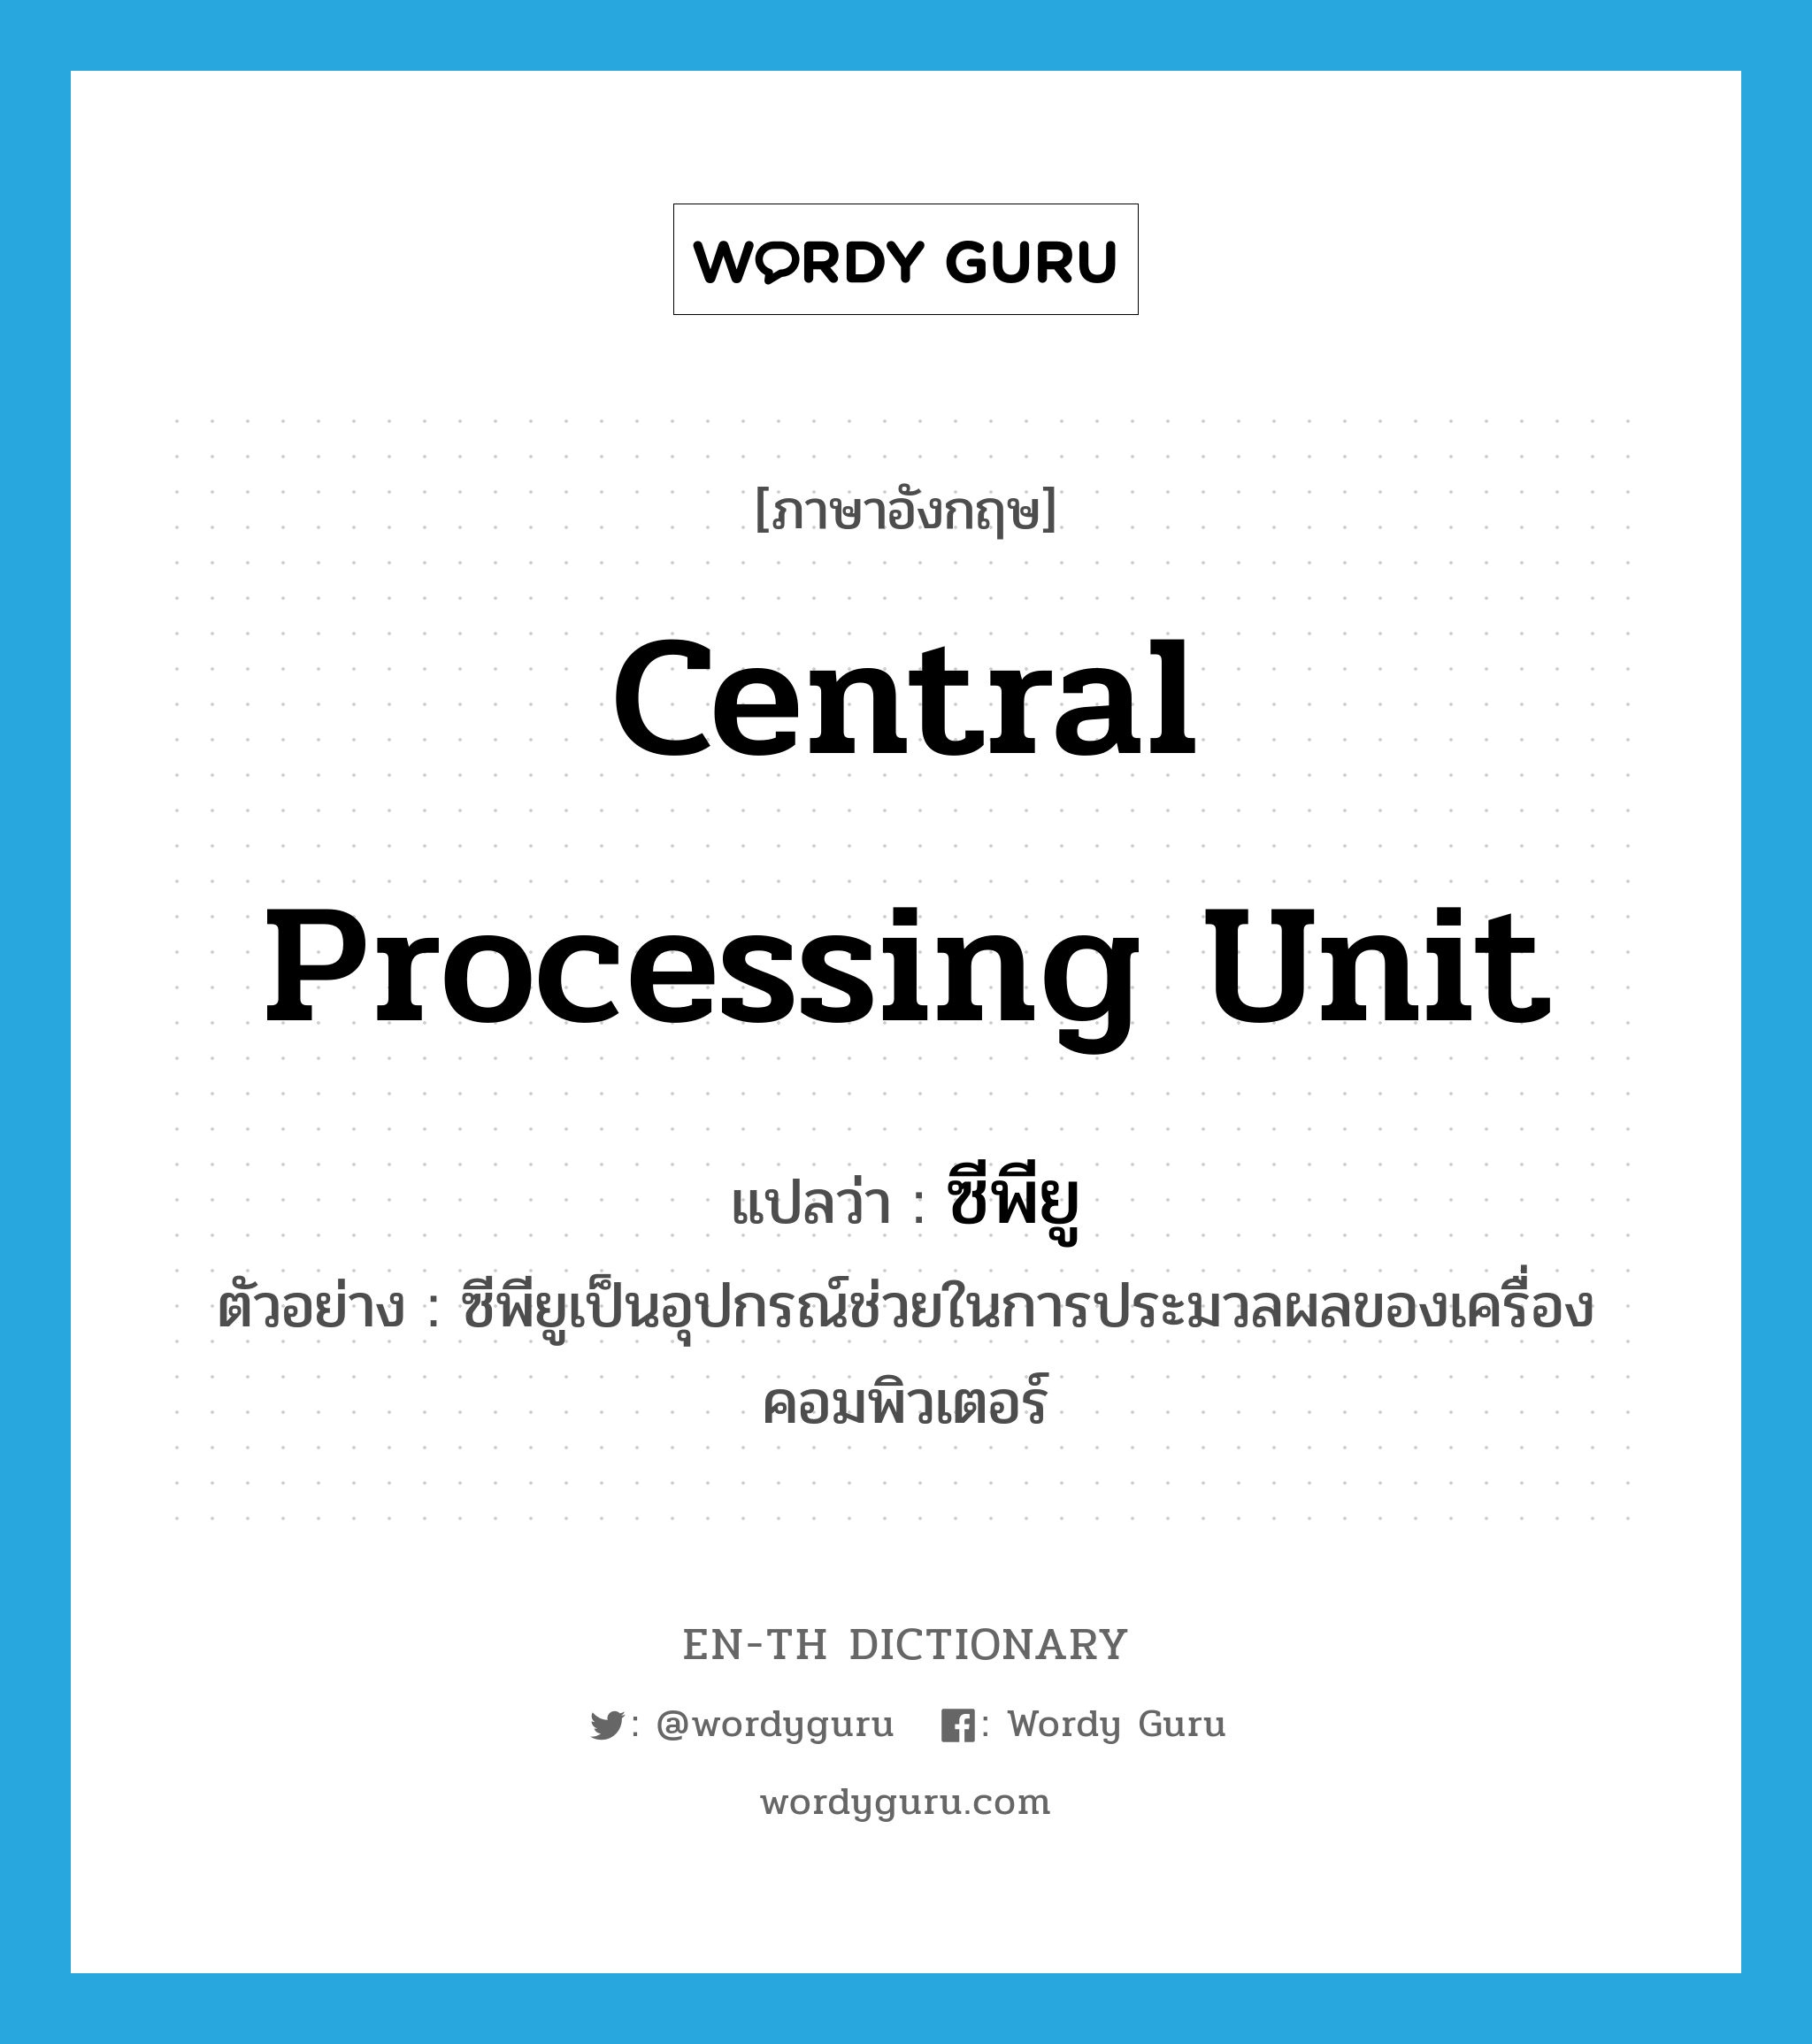 central processing unit แปลว่า?, คำศัพท์ภาษาอังกฤษ central processing unit แปลว่า ซีพียู ประเภท N ตัวอย่าง ซีพียูเป็นอุปกรณ์ช่วยในการประมวลผลของเครื่องคอมพิวเตอร์ หมวด N